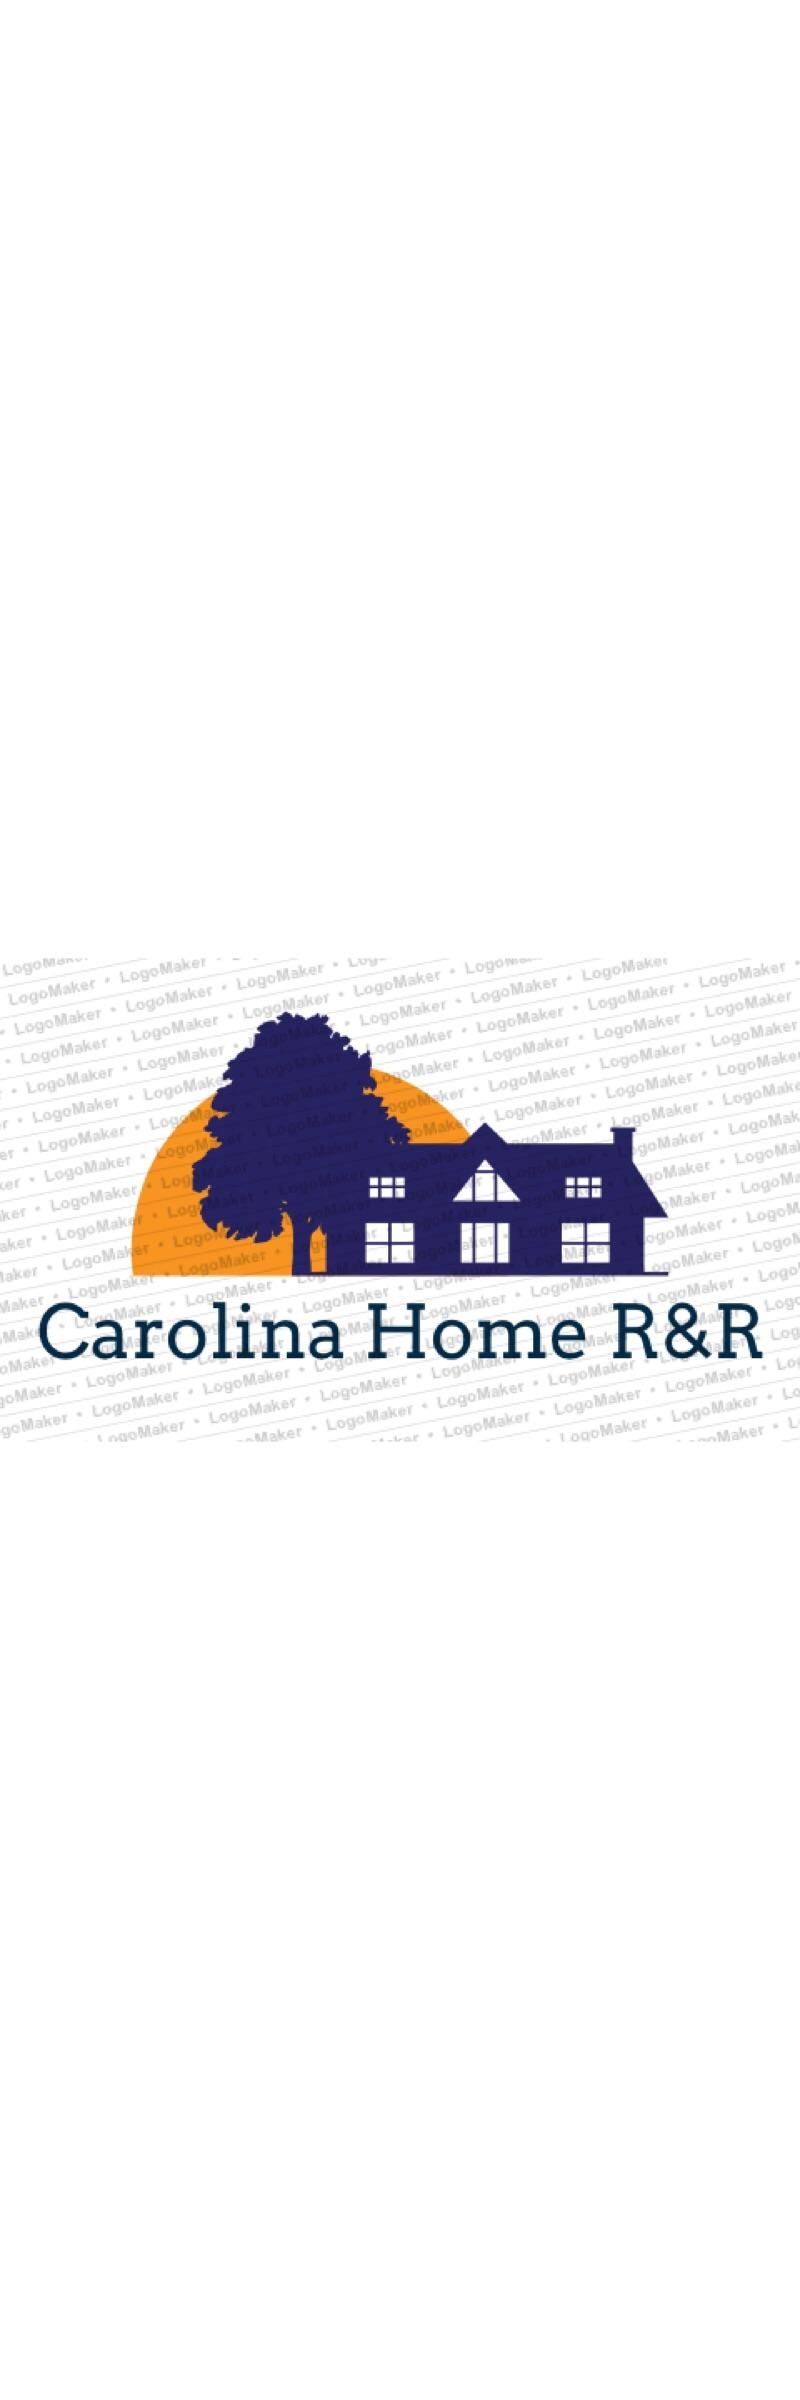 Carolina Home R&R